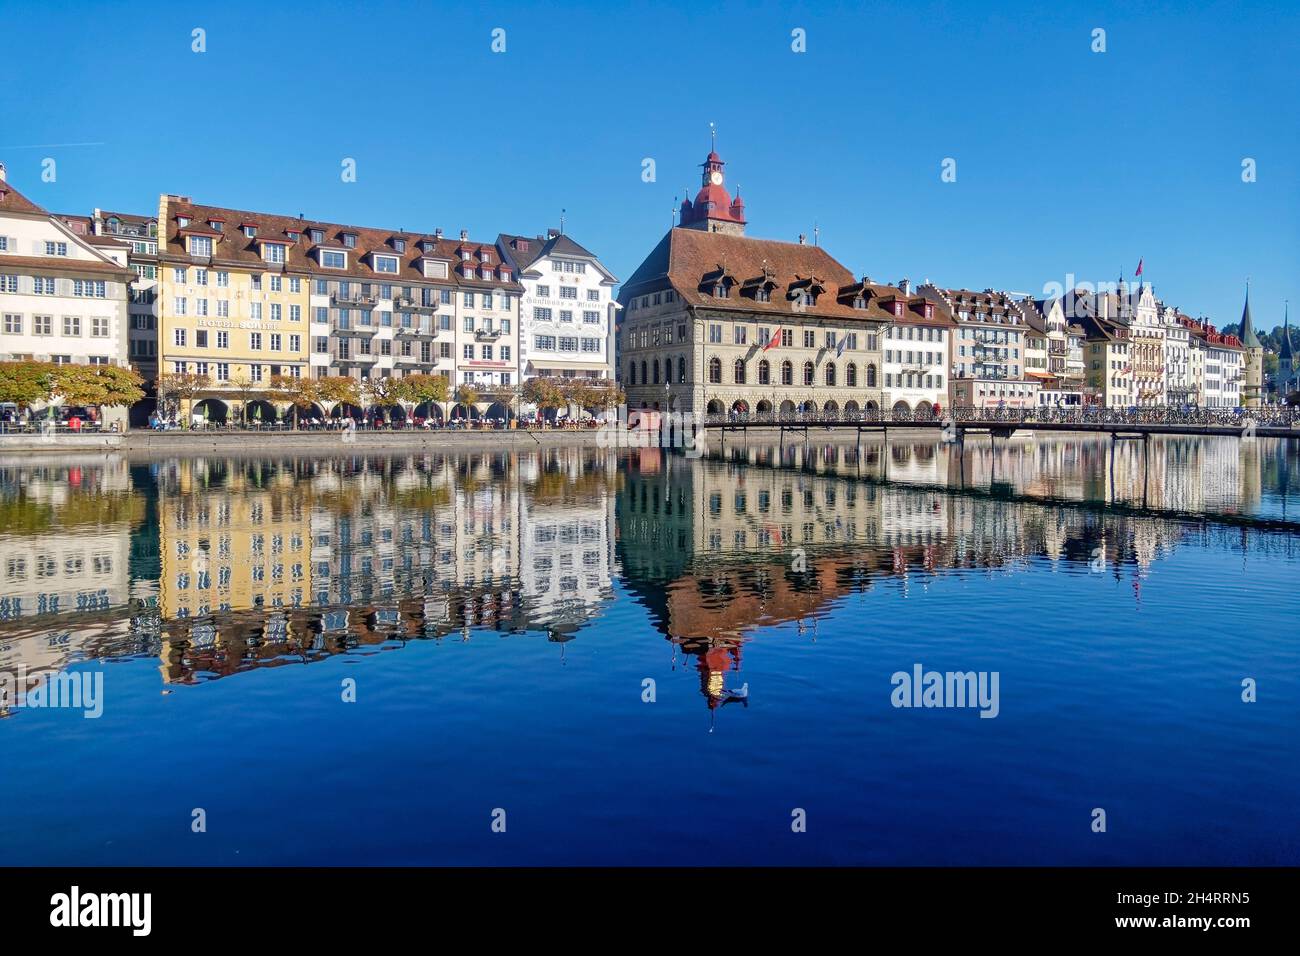 Luzern im Herbst, Fluss Reuss, Altstadt, Schweiz Foto Stock